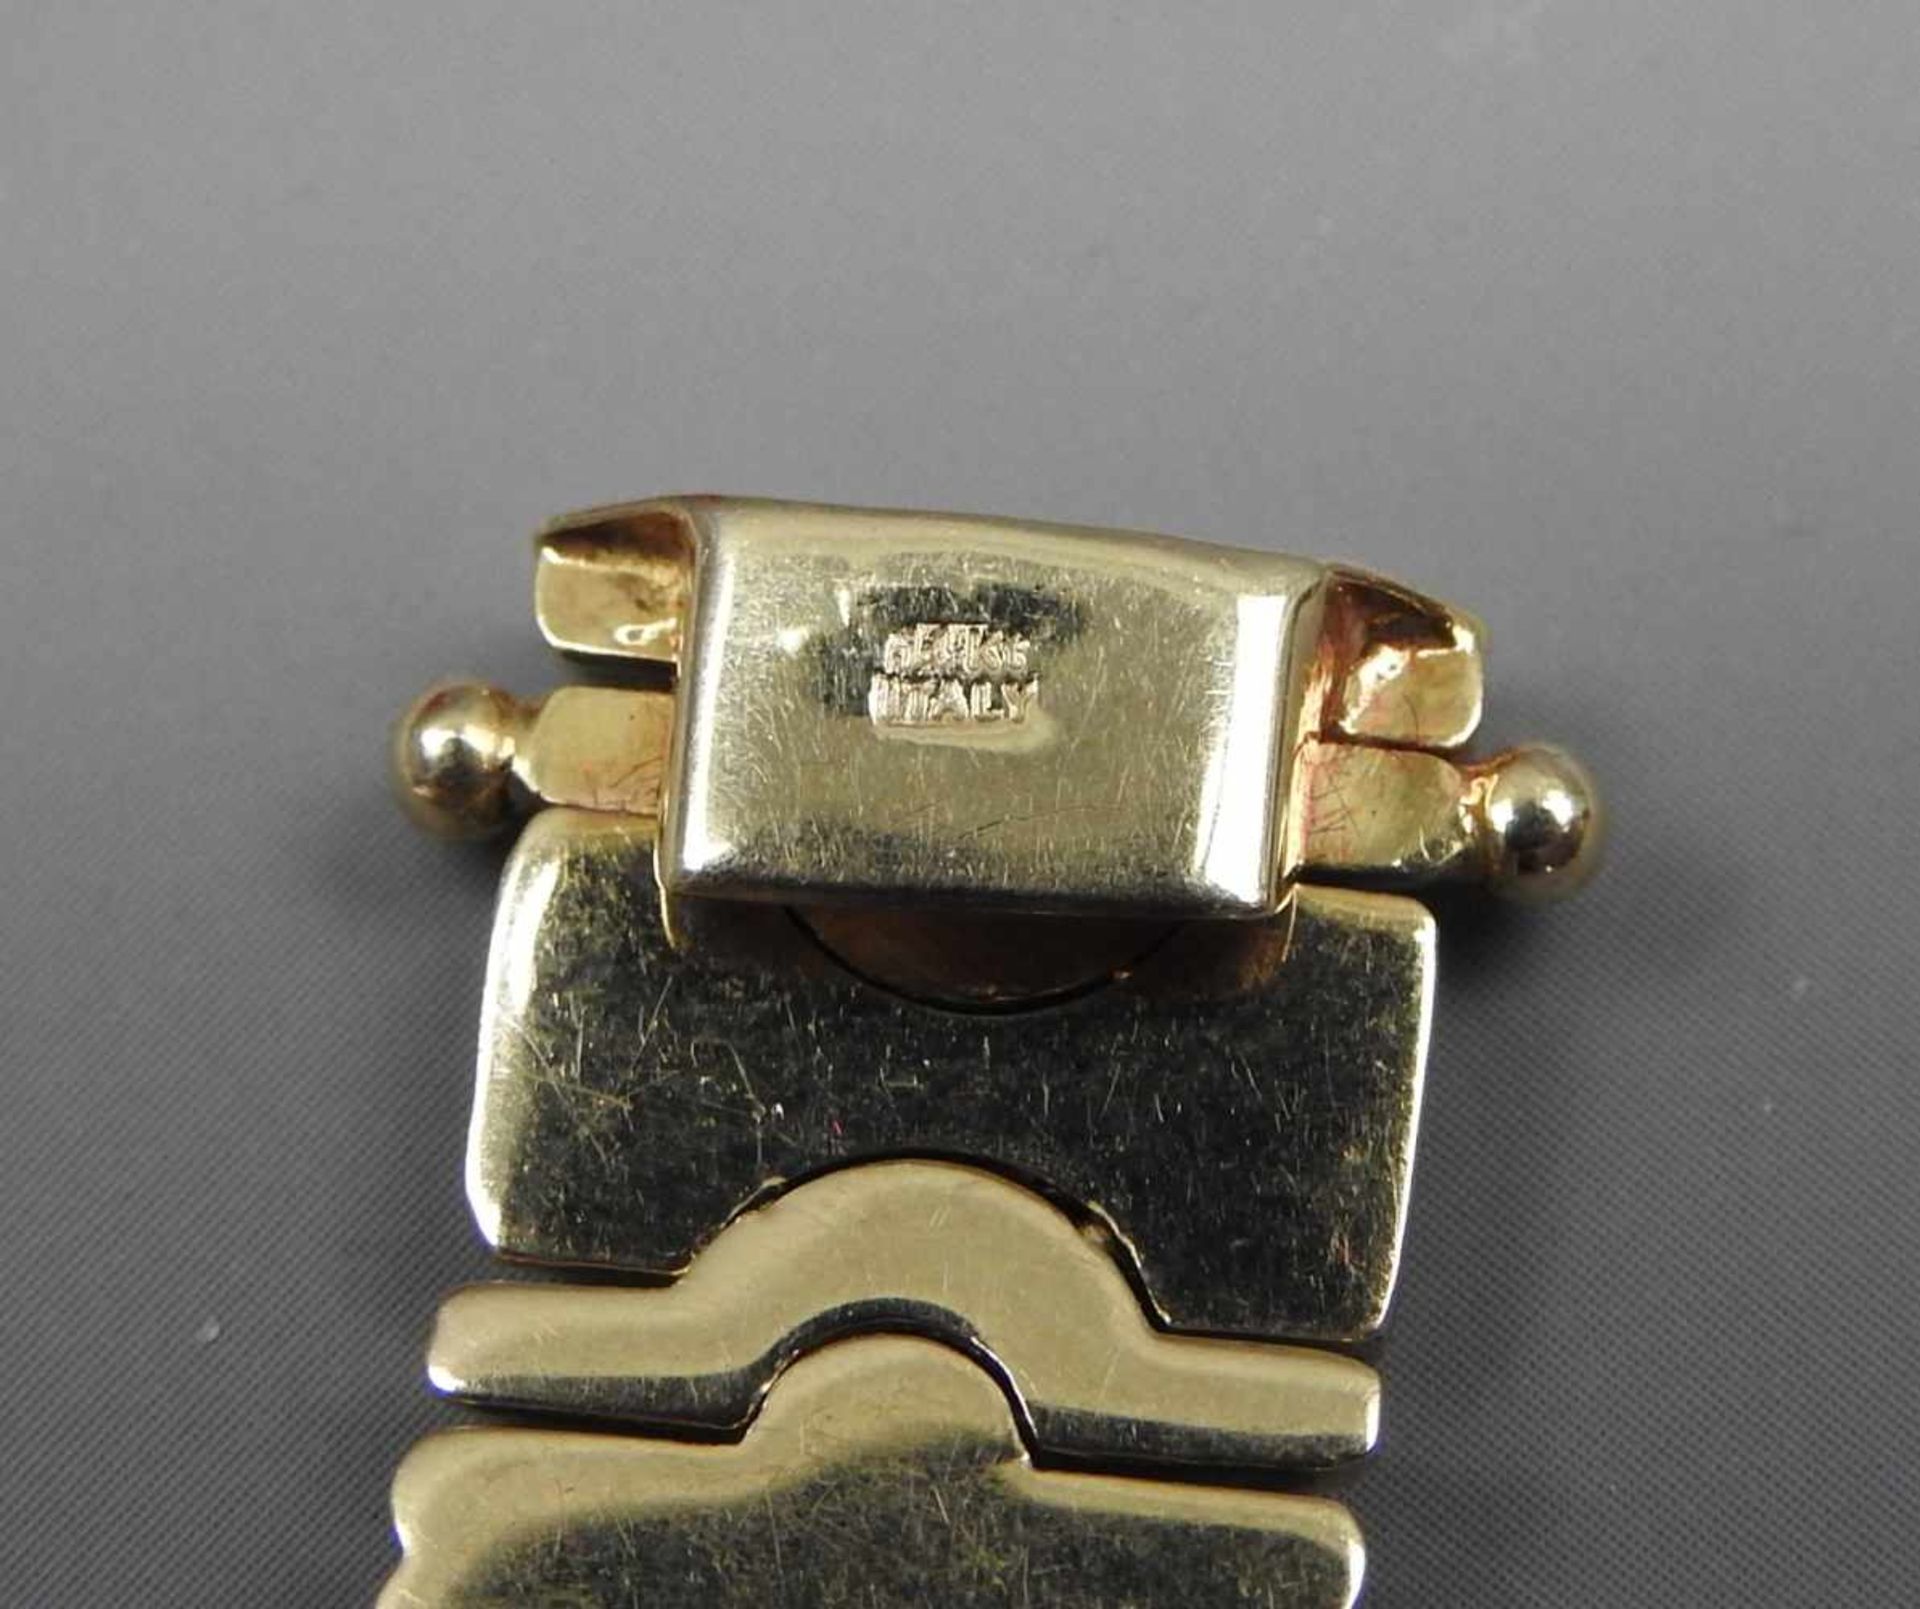 Collier und Armband14 K. Gelbgold mit Diamantbesatz von ca. 0,80 ct. Wohl Deutschland, 1980er-Jahre. - Bild 4 aus 4